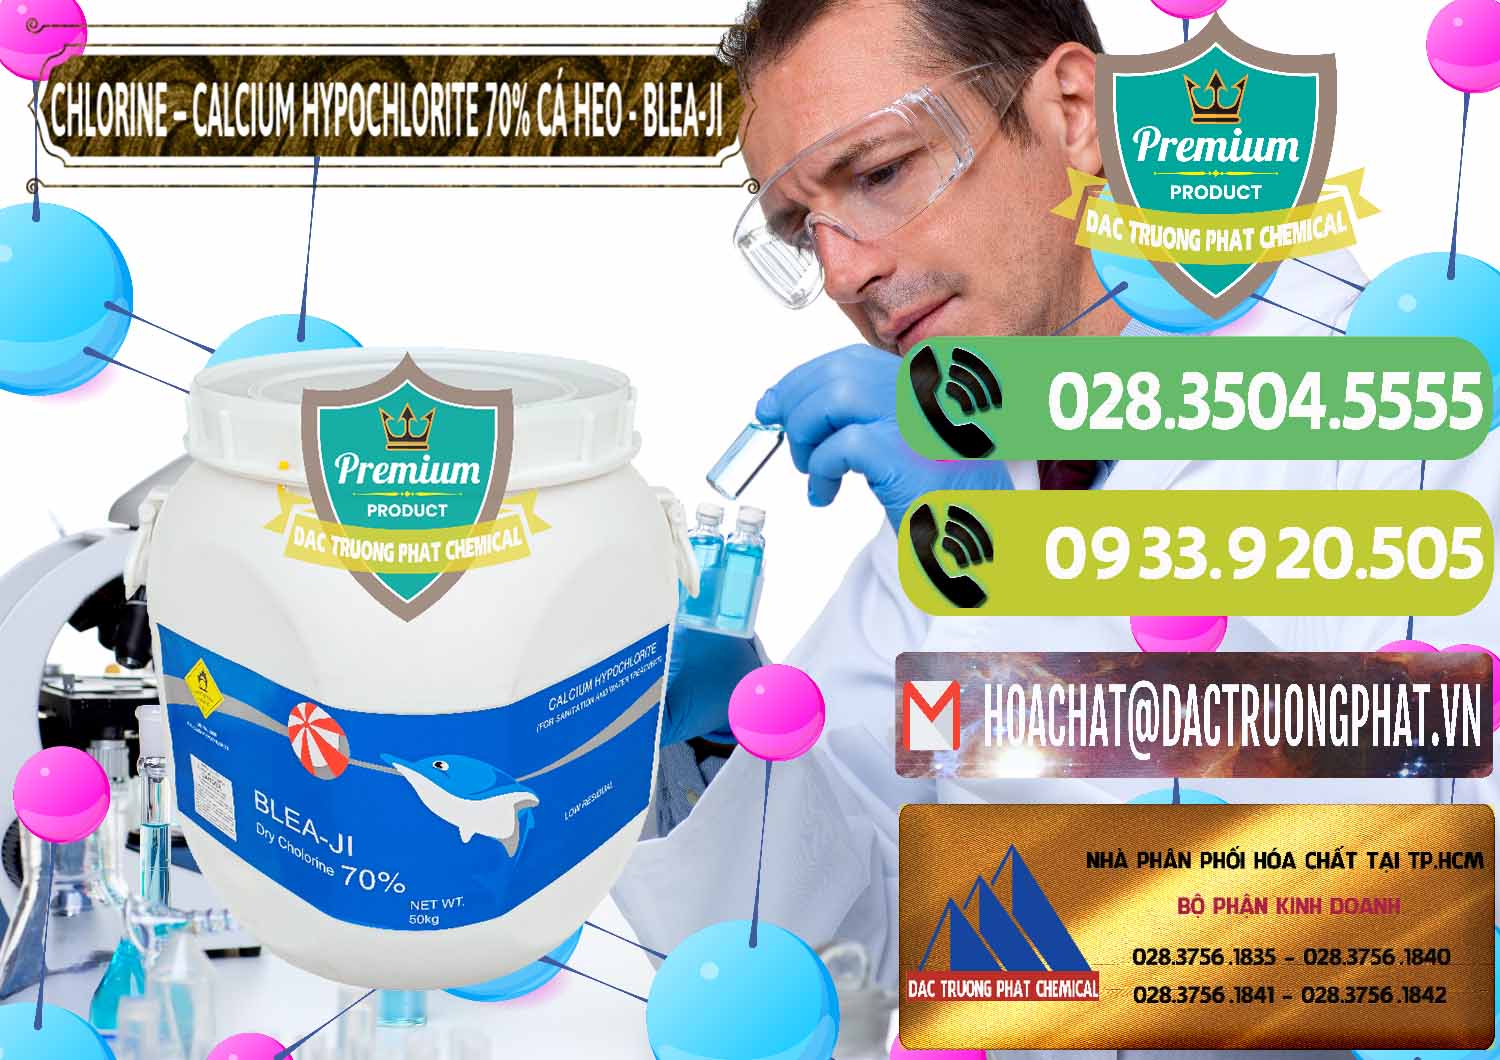 Nơi chuyên bán - cung ứng Clorin - Chlorine Cá Heo 70% Blea-Ji Trung Quốc China - 0056 - Công ty kinh doanh & phân phối hóa chất tại TP.HCM - hoachatmientay.vn